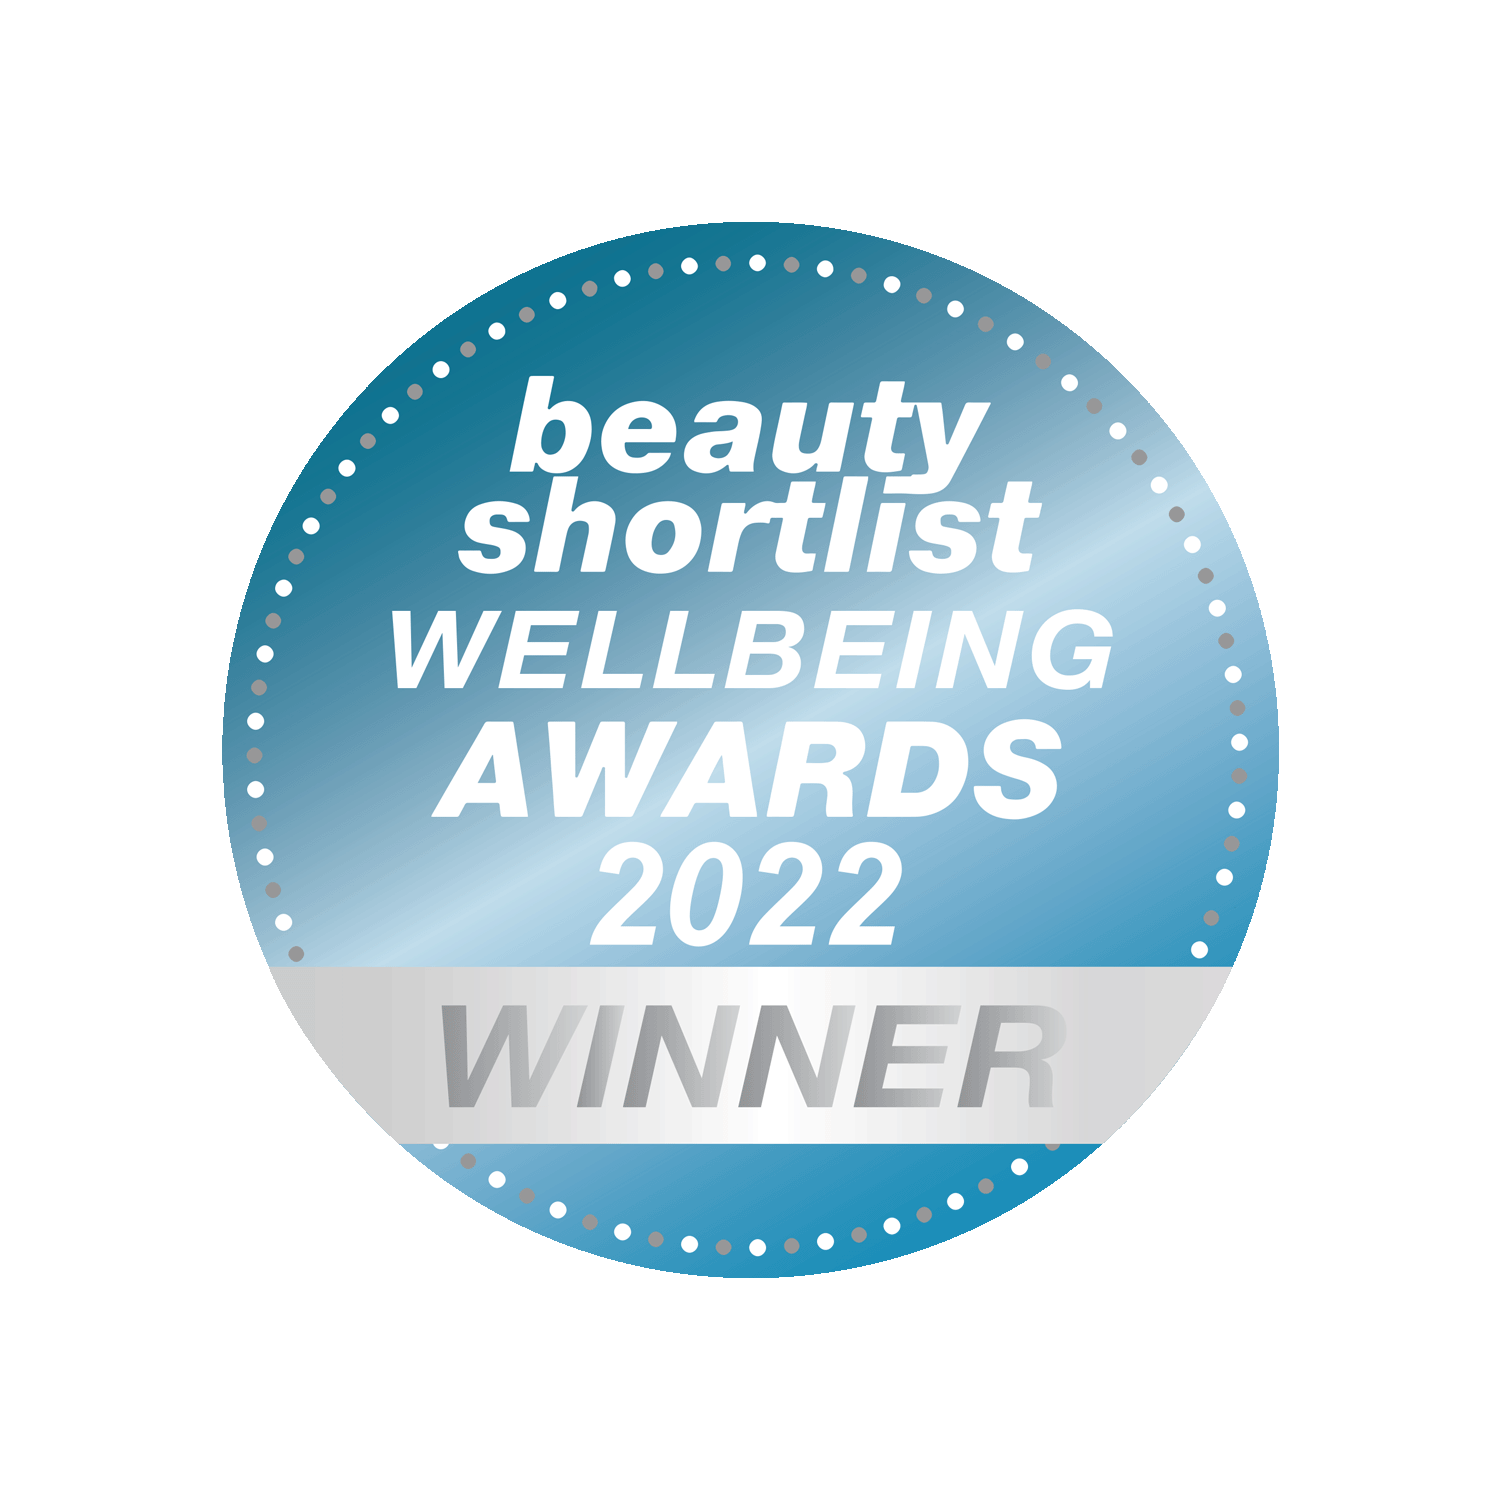 Beauty Shortlist Wellbeing Awards Winner 2022 - Winner - The Universal Soul Company.png